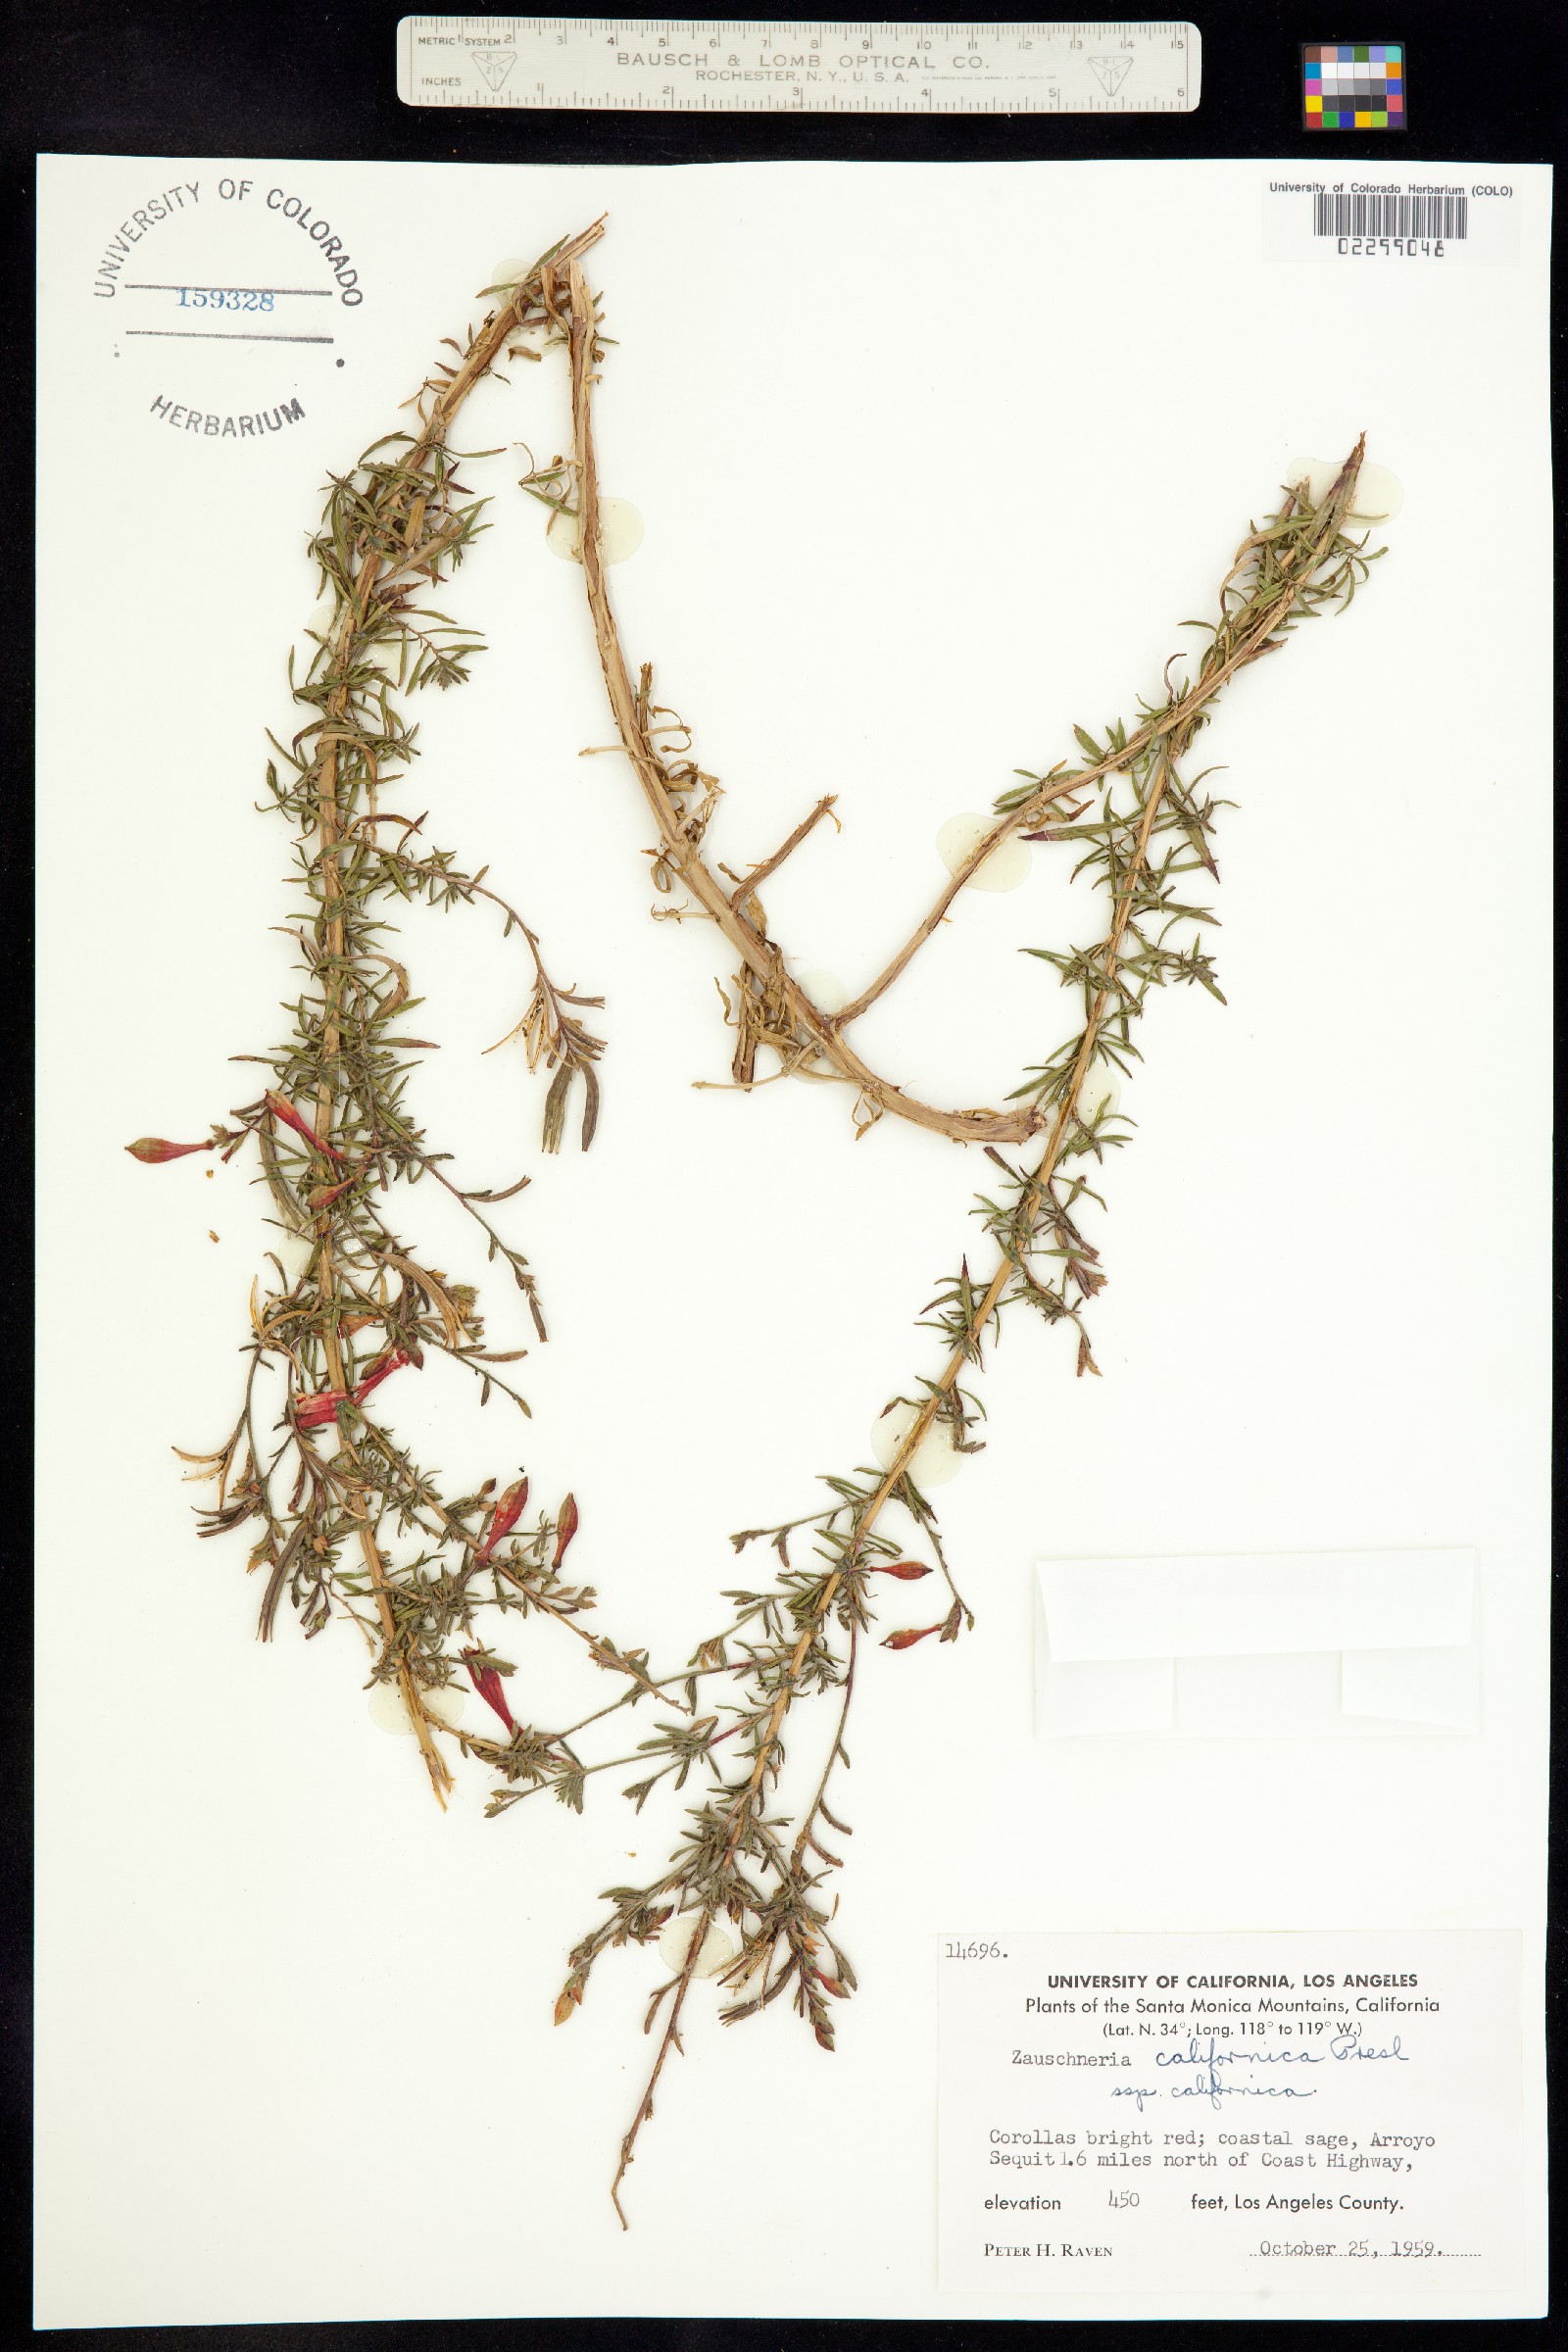 Epilobium canum ssp. angustifolium image